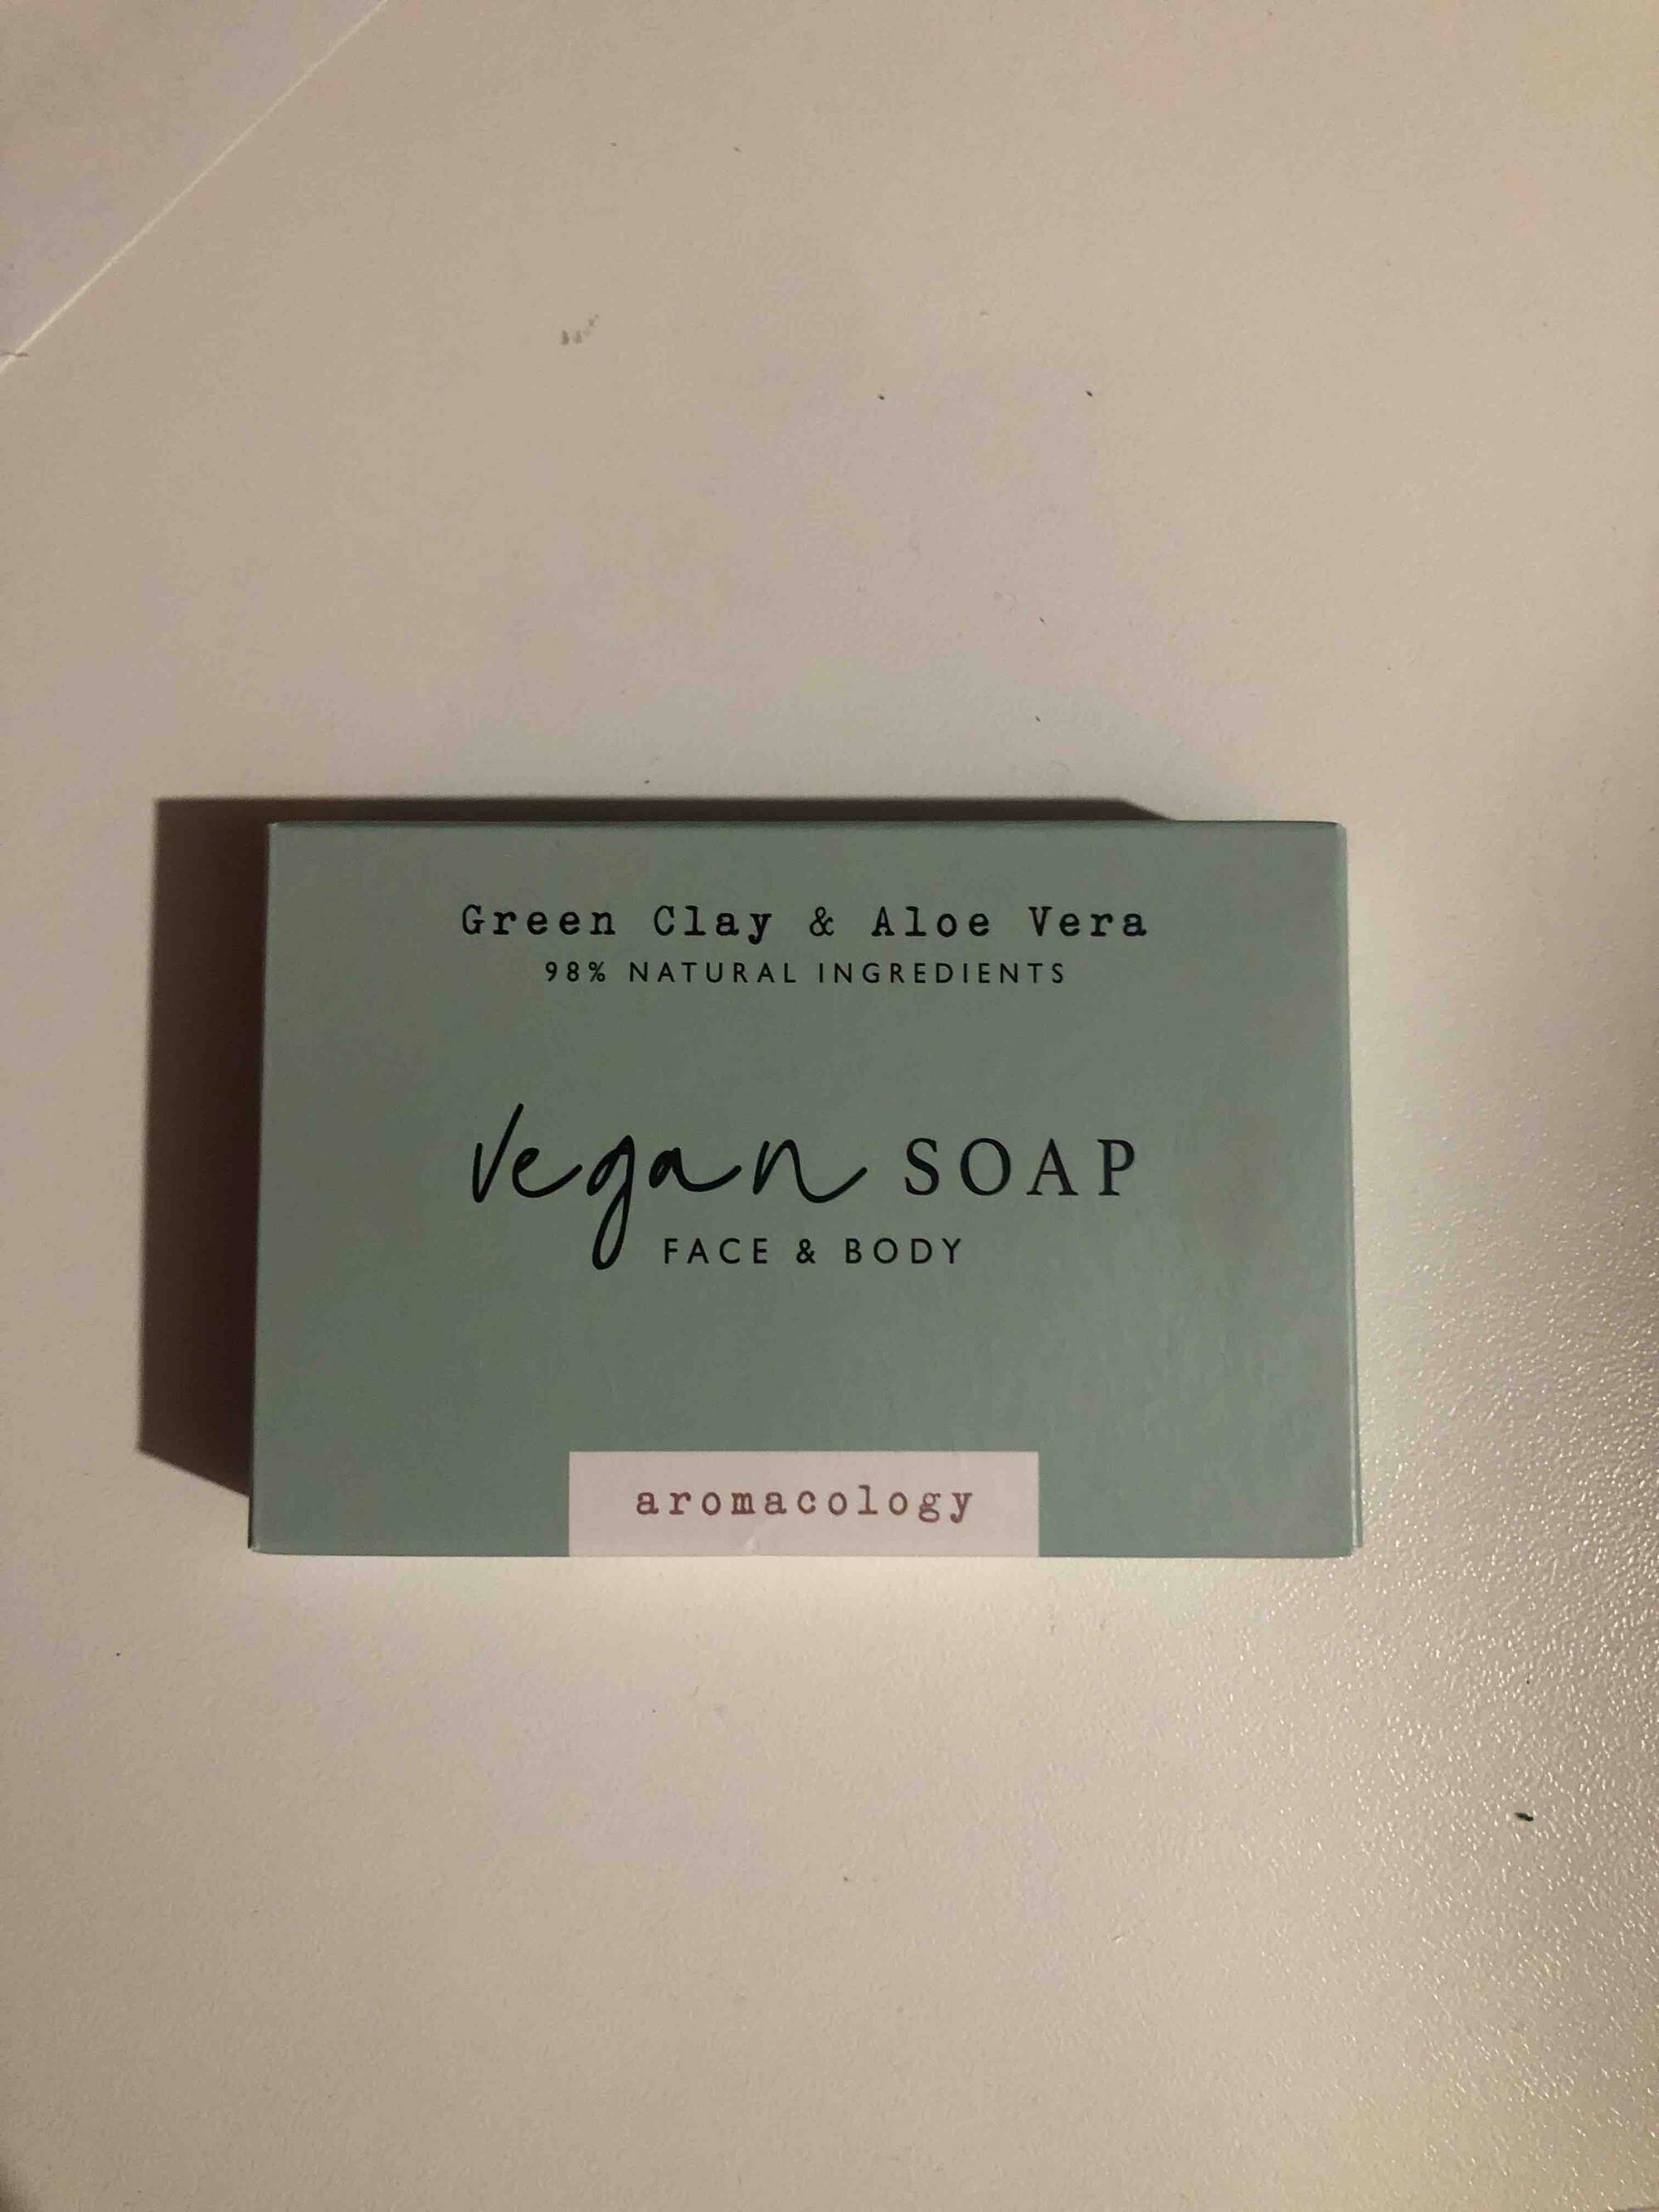 AROMACOLOGY - Vegan soap green clay & aloe vera 